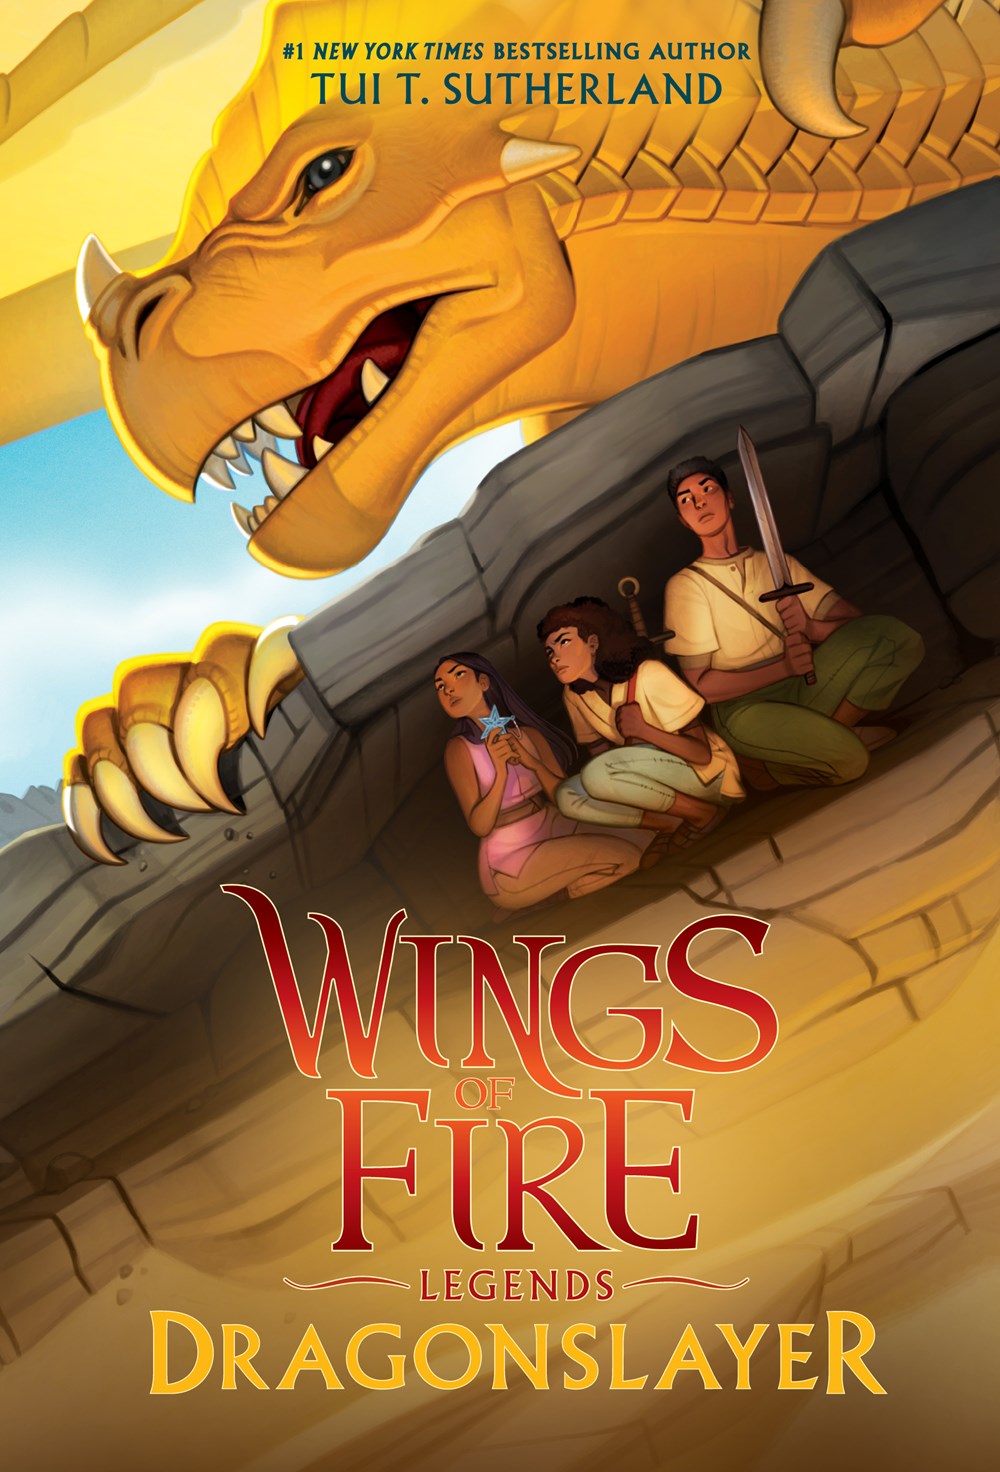 Wings of fire